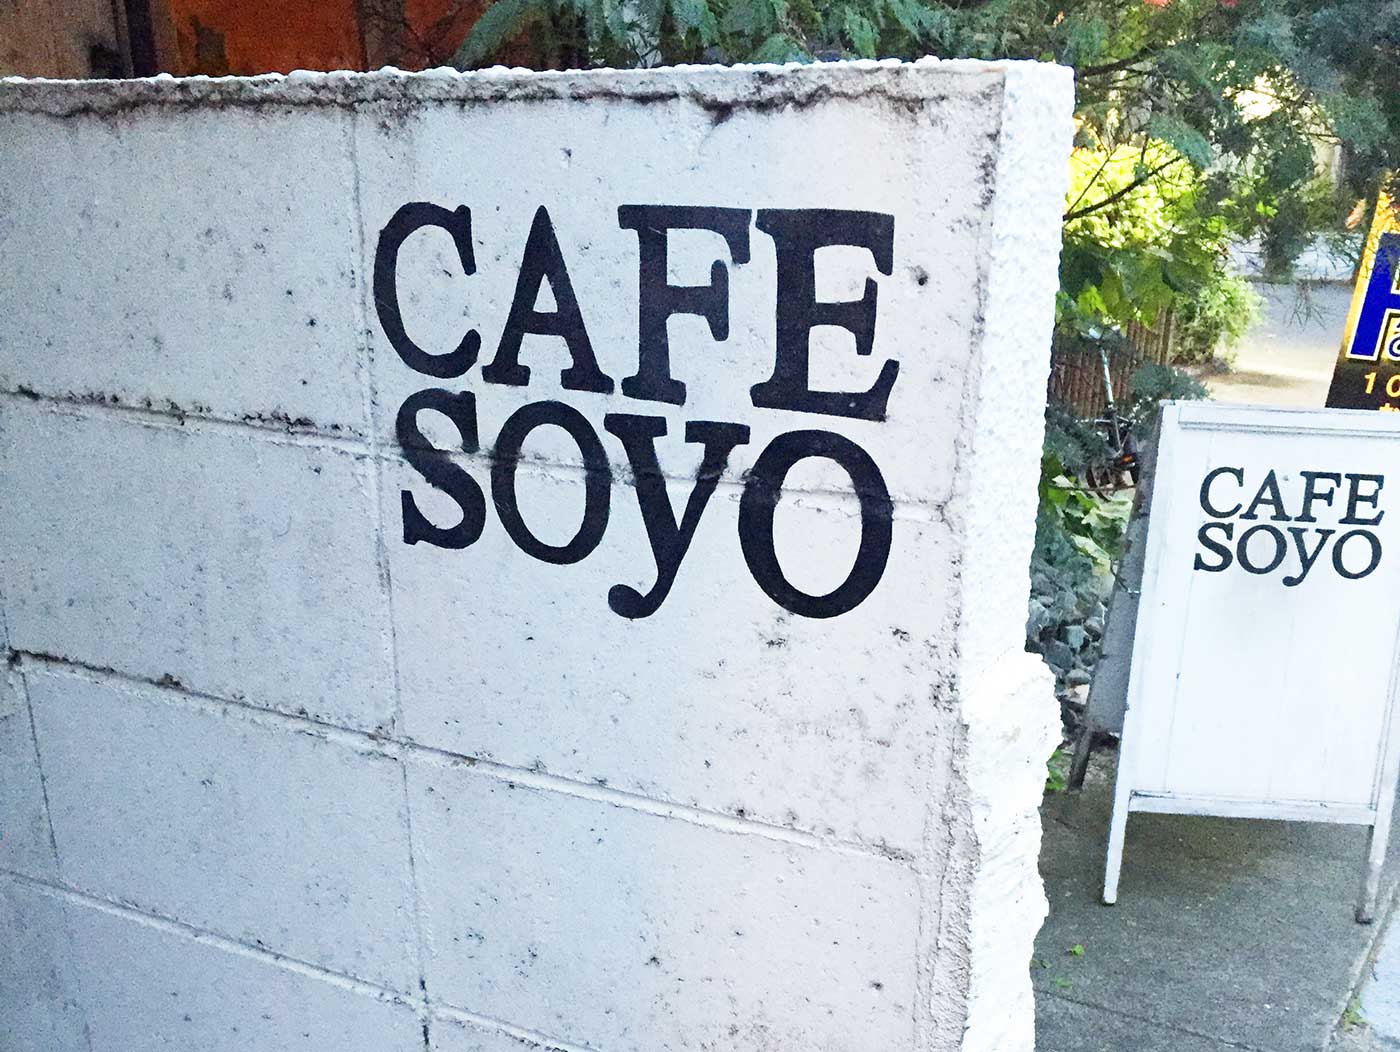 CAFE soyo